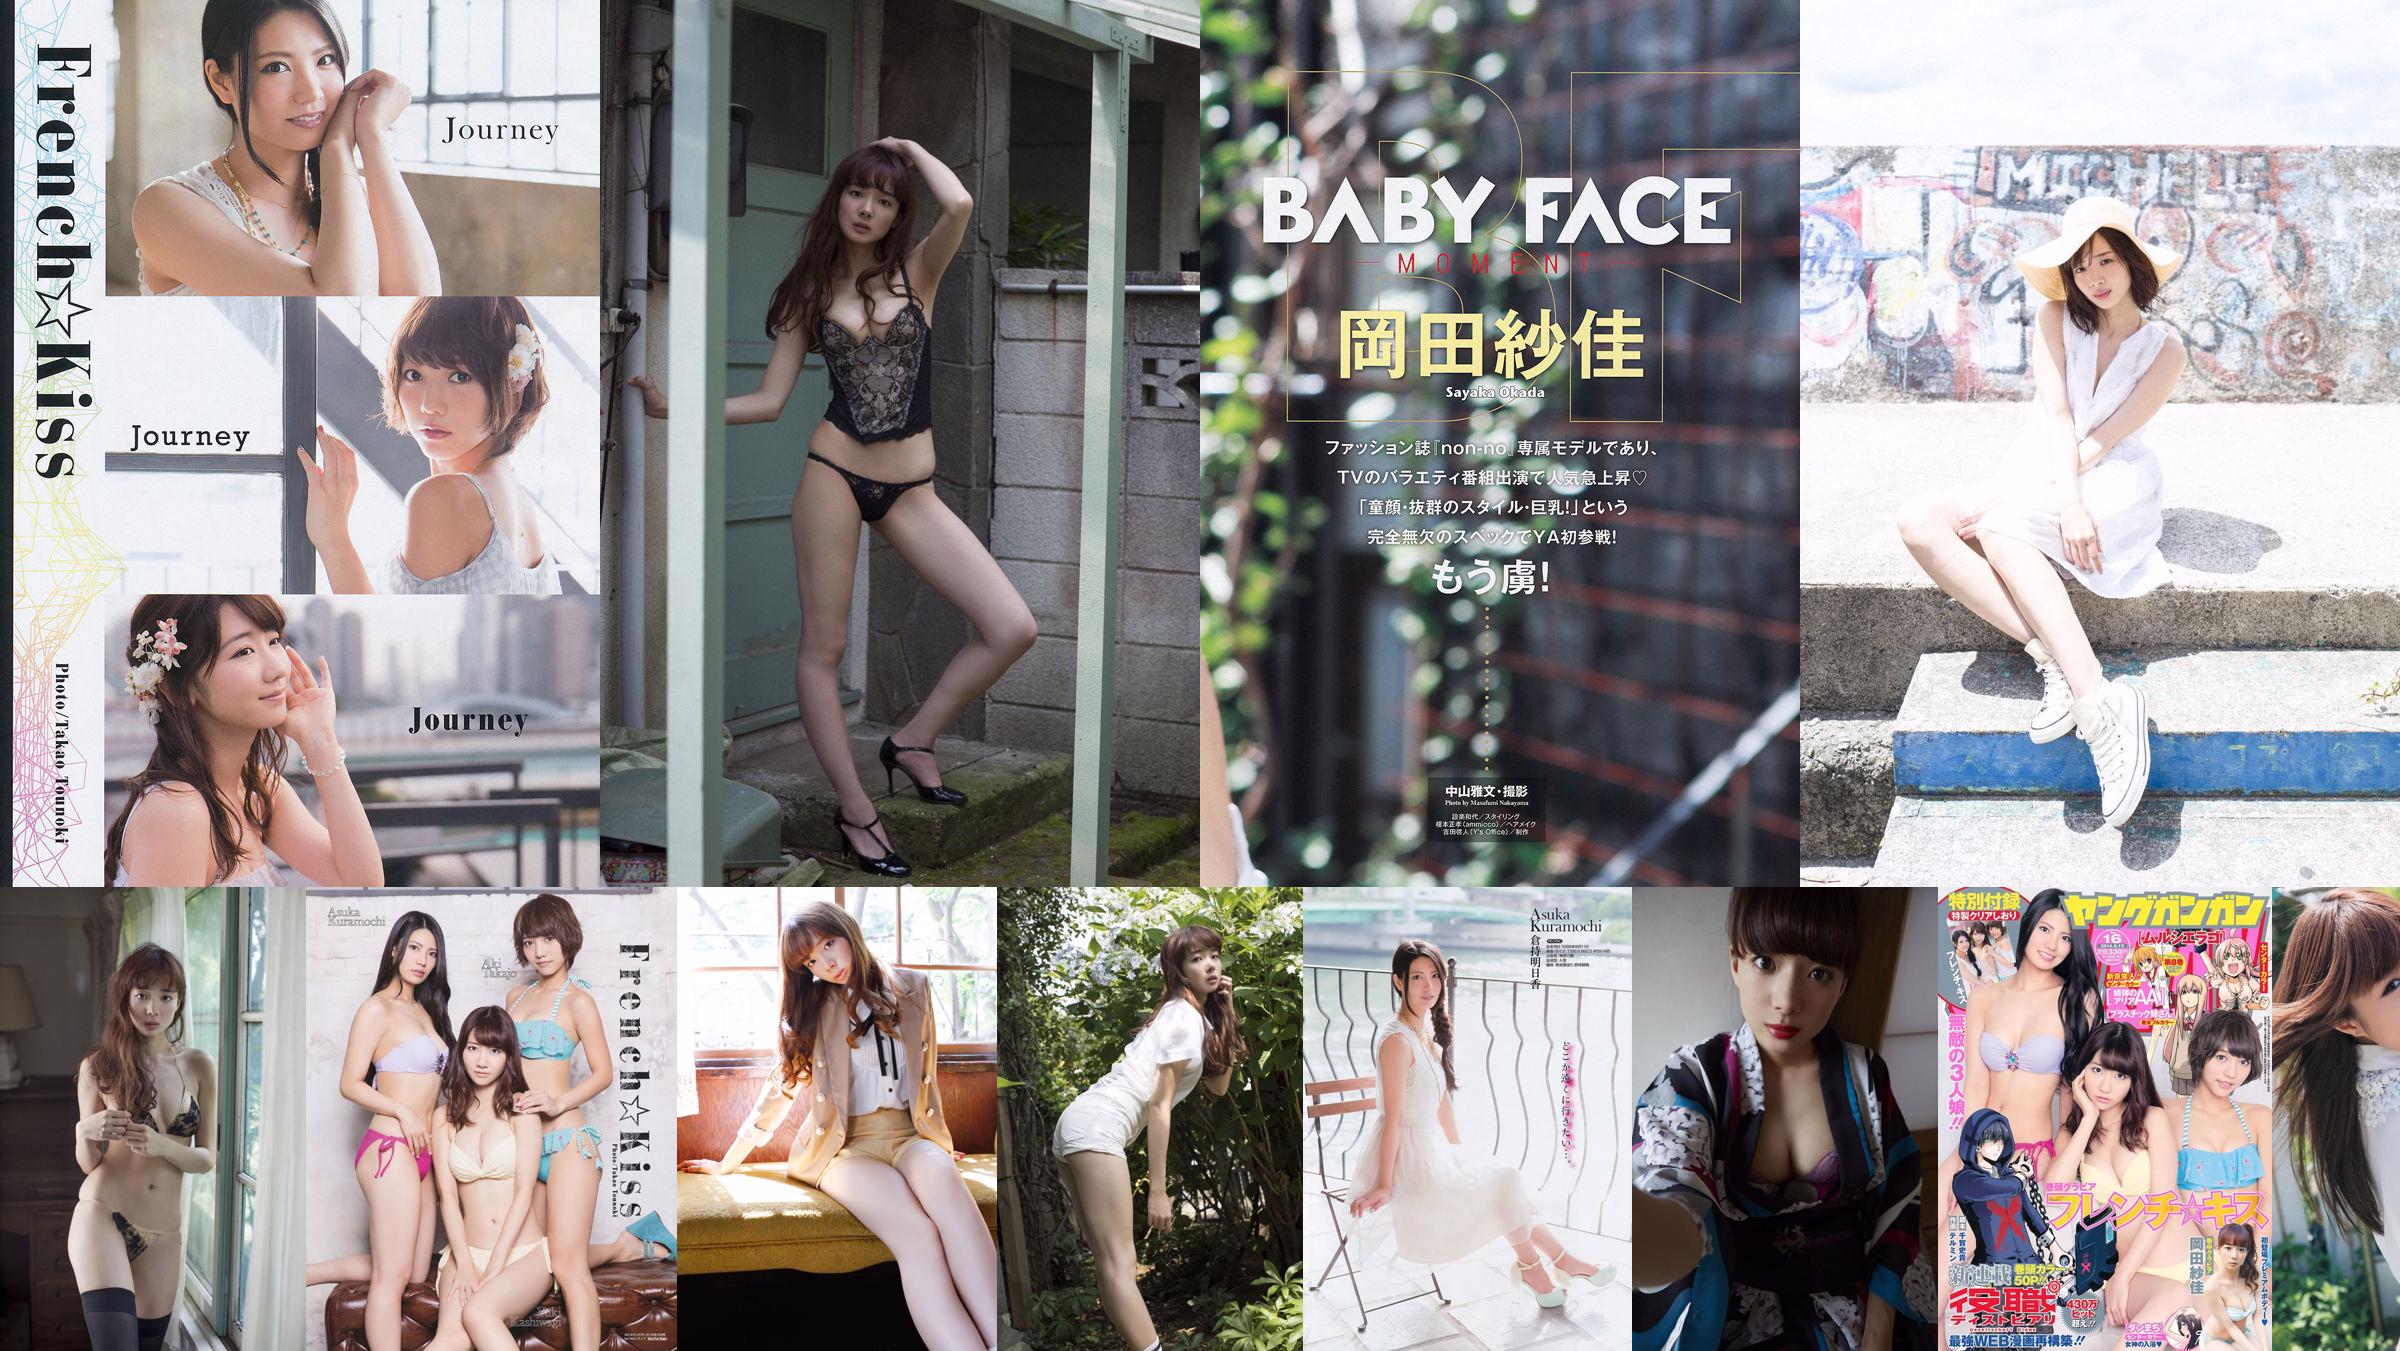 Sayaka Okada Up Up Girls (Kakko) Nishikawa Yui [Young Animal] 2014 No.12 Photo Magazine No.100a83 Página 3